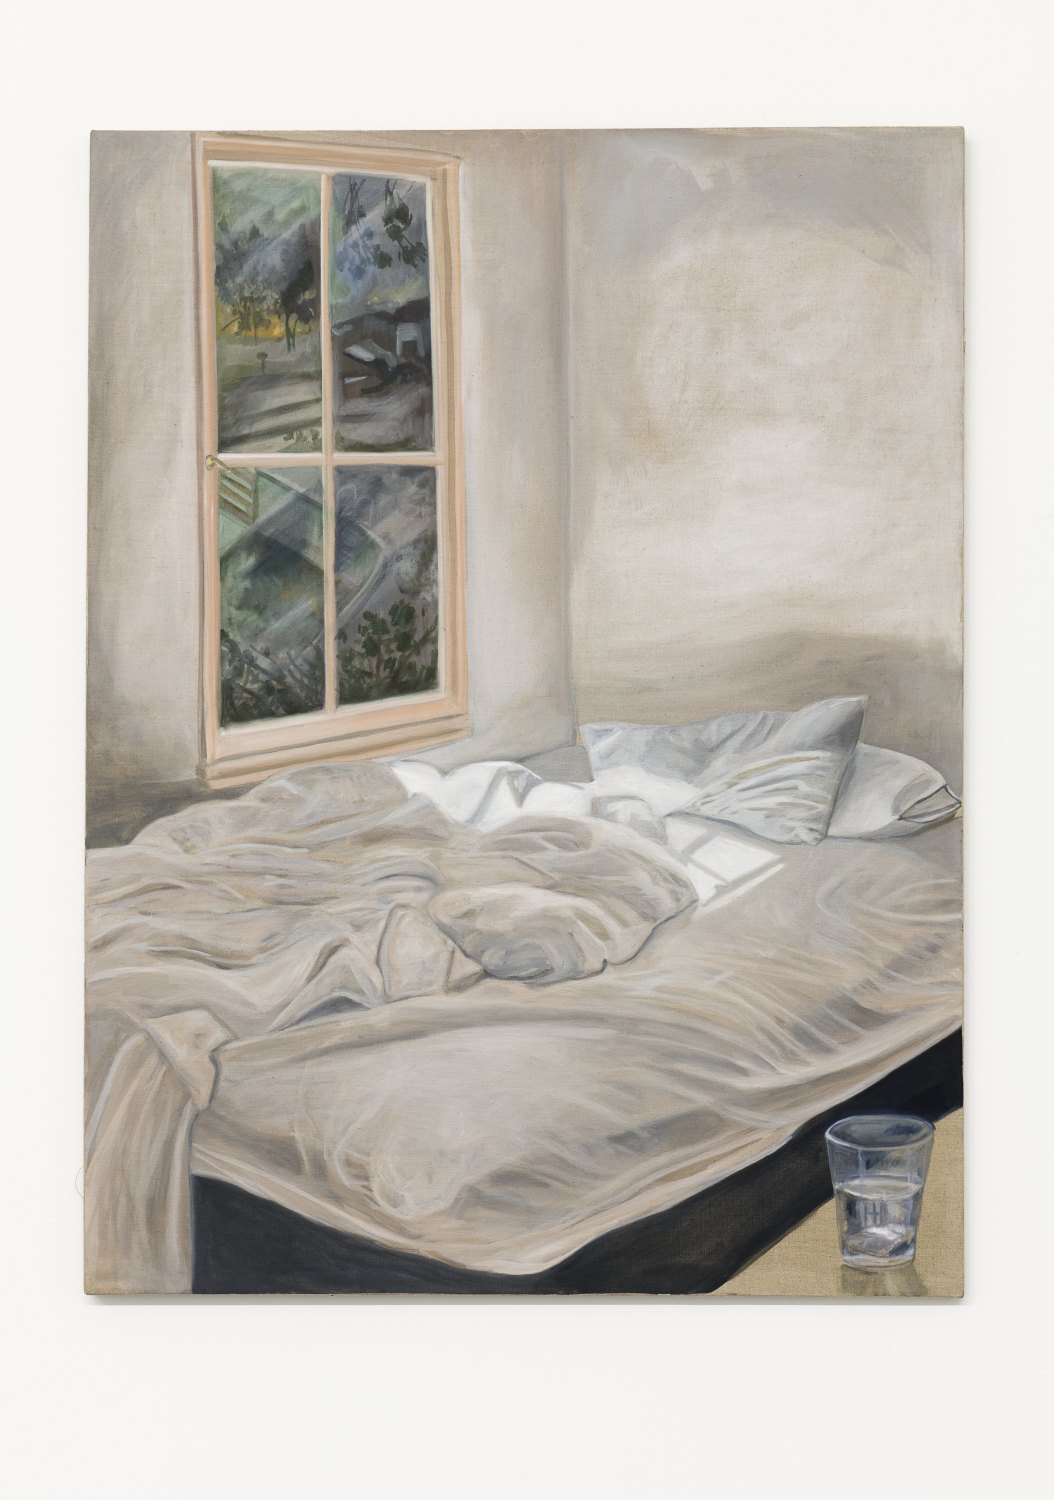 Jill Mulleady Insomnia, 2018 Oil on linen, 122 x 92 cm